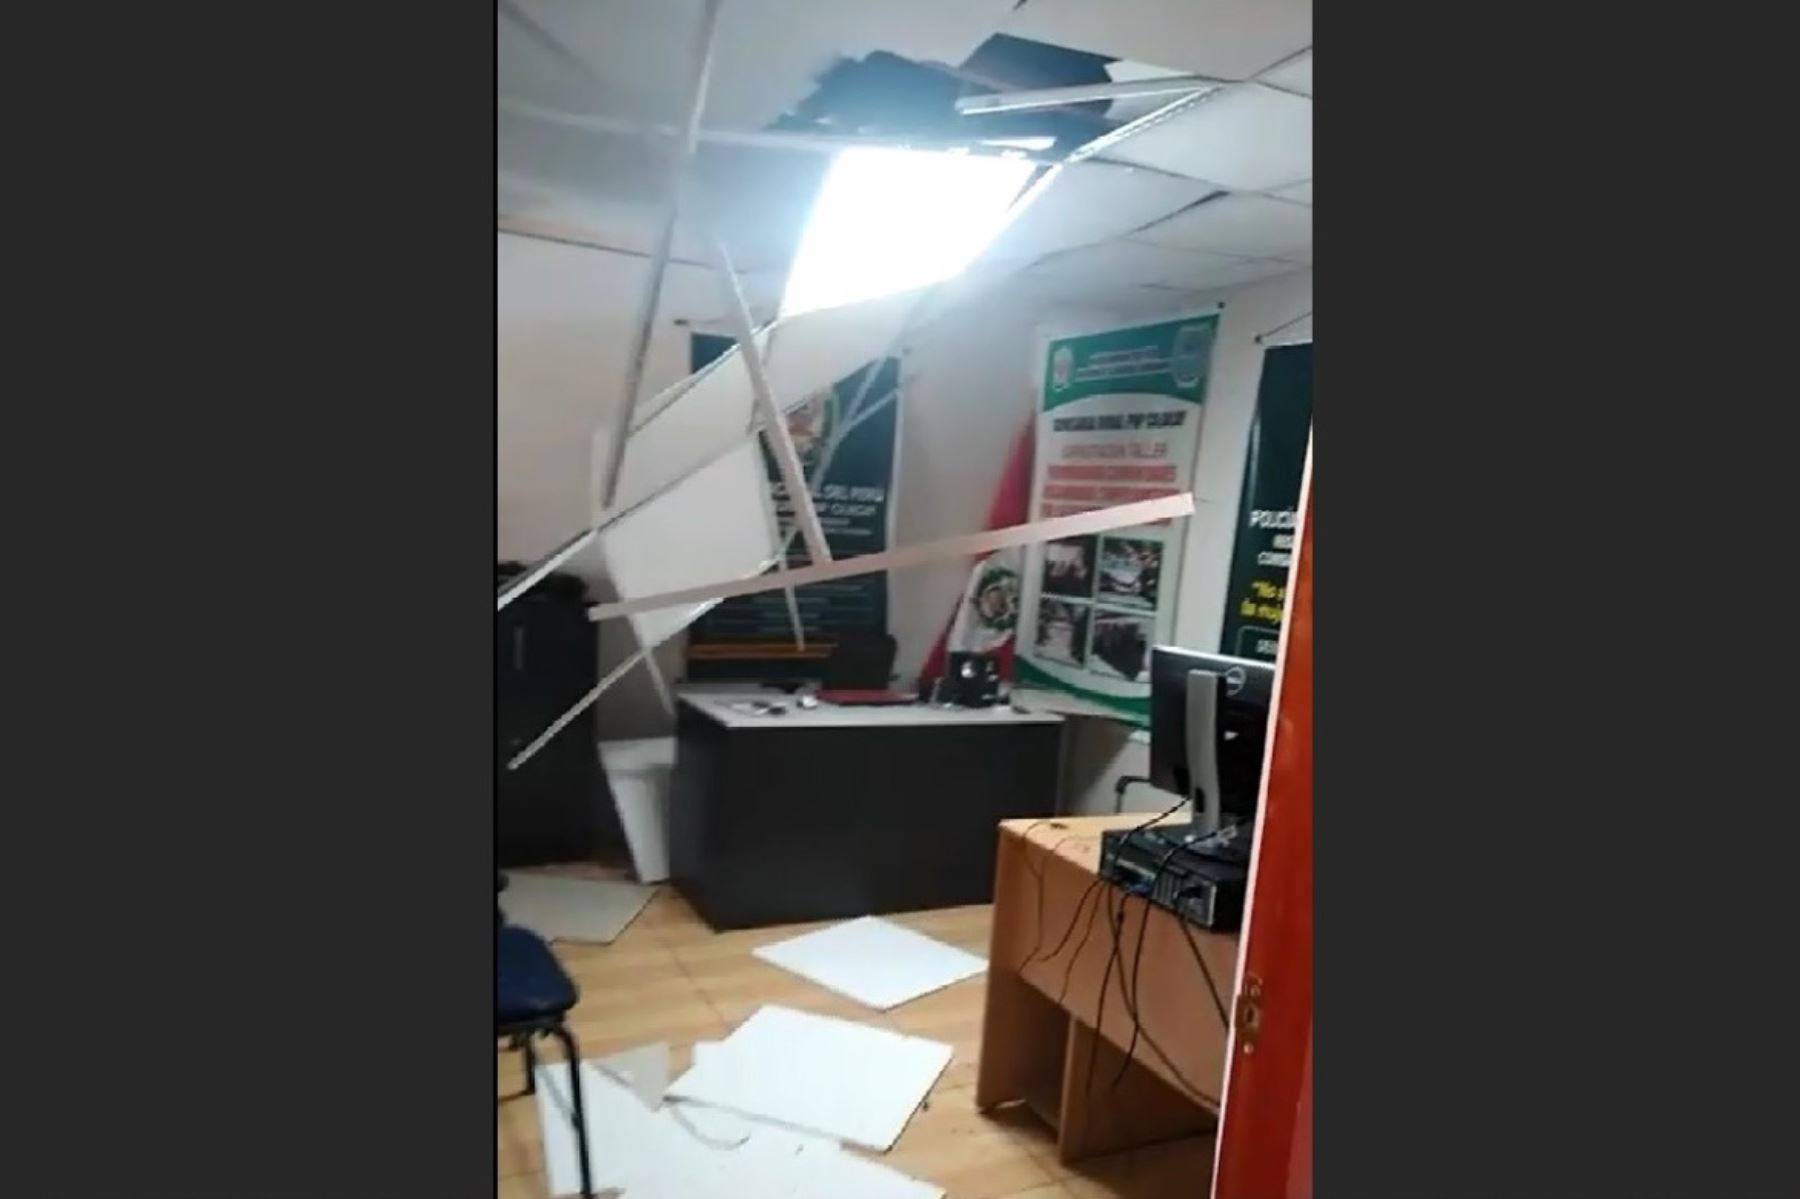 Se desplomó el techo de un ambiente de la comisaría de Cajacay, en la provincia de Bolognesi, a causa del sismo de magnitud 5.2 que se registró esta mañana en la sierra de Áncash.